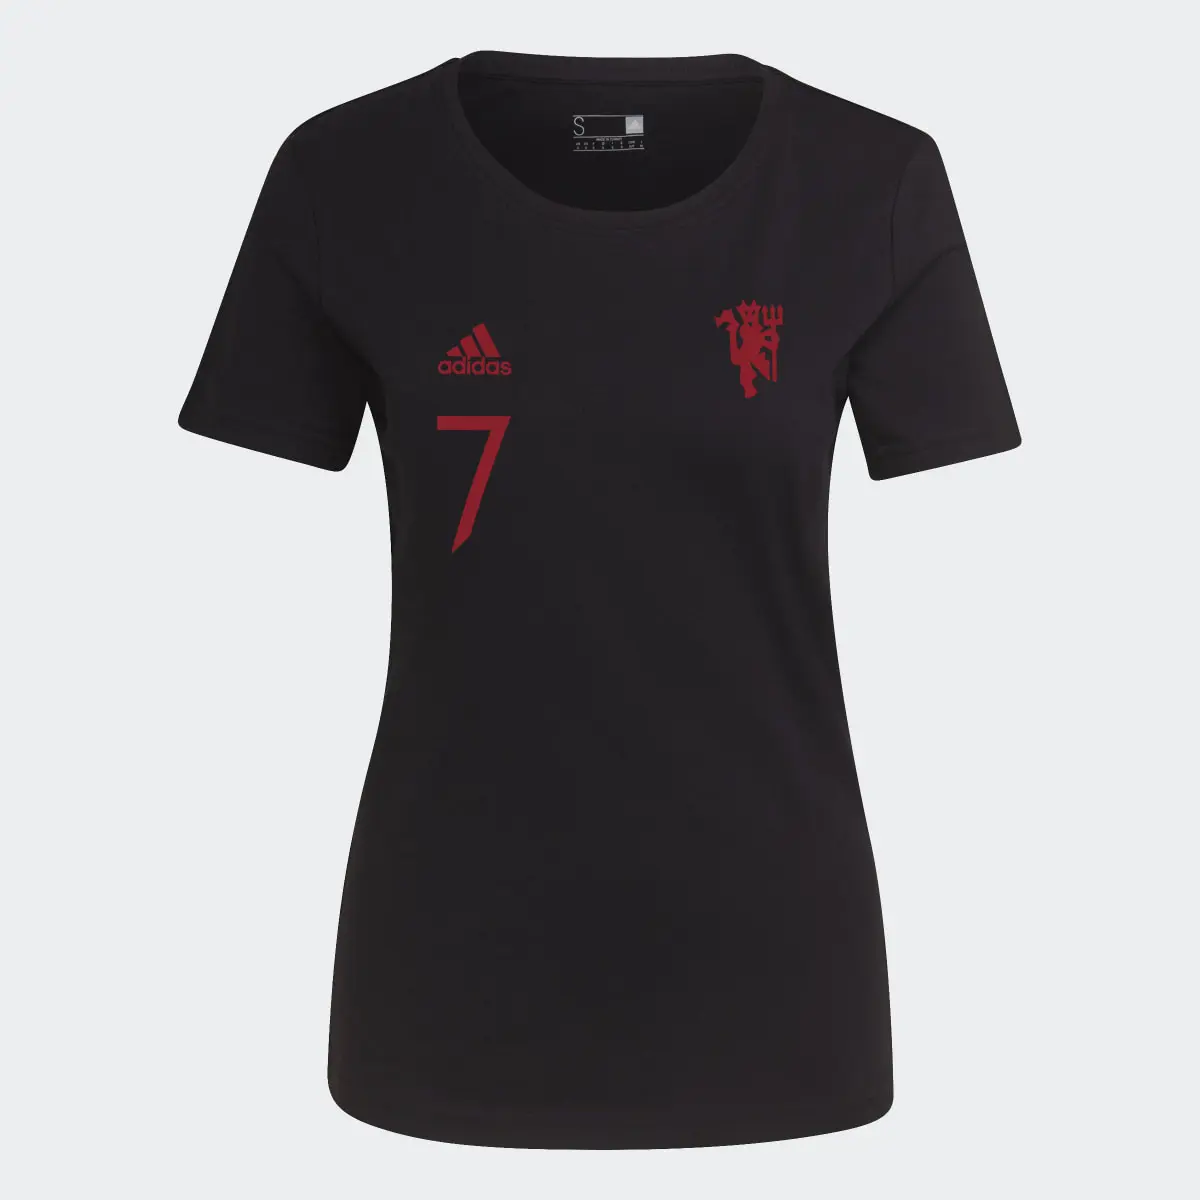 Adidas Camiseta Manchester United Graphic. 1